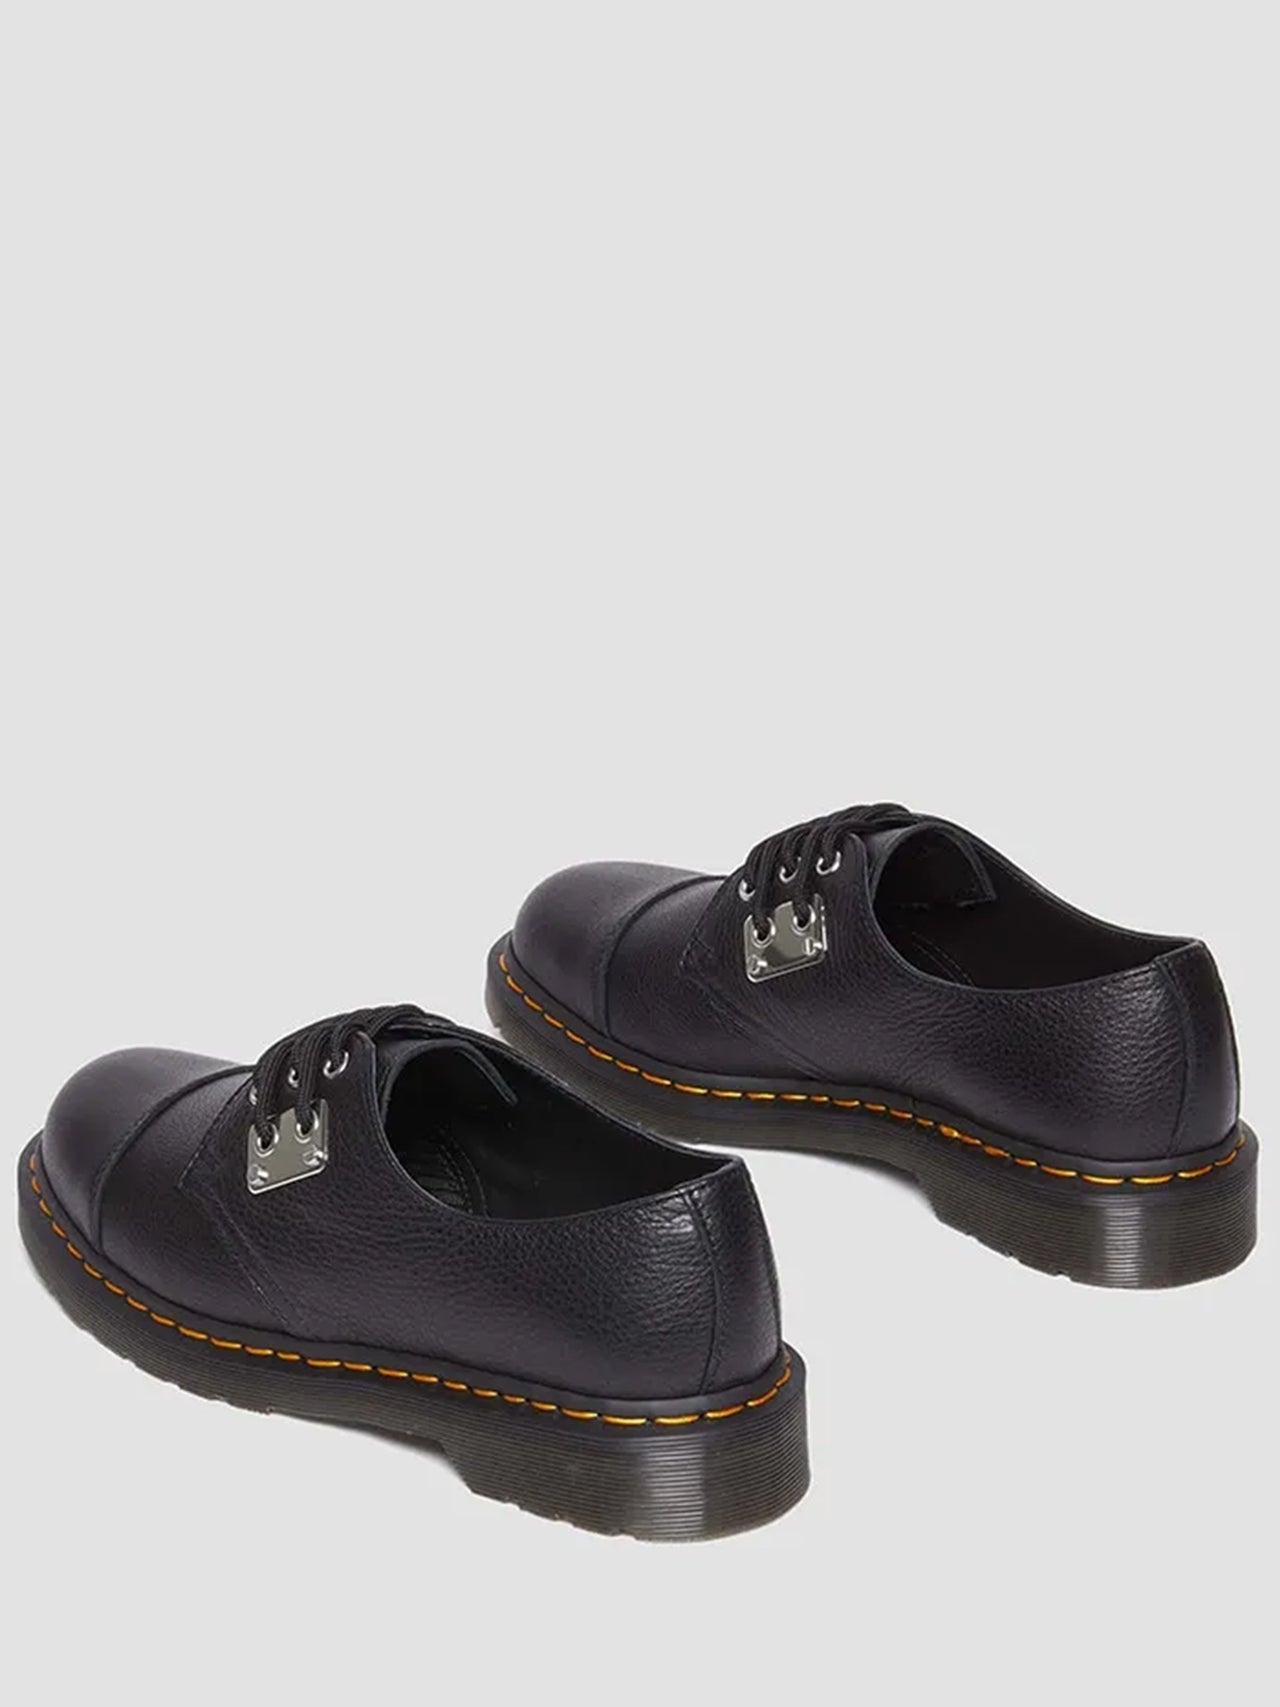 【20%OFF】Dr.Marten / 1461 Hardware 3 Hole Shoes (BLACK)